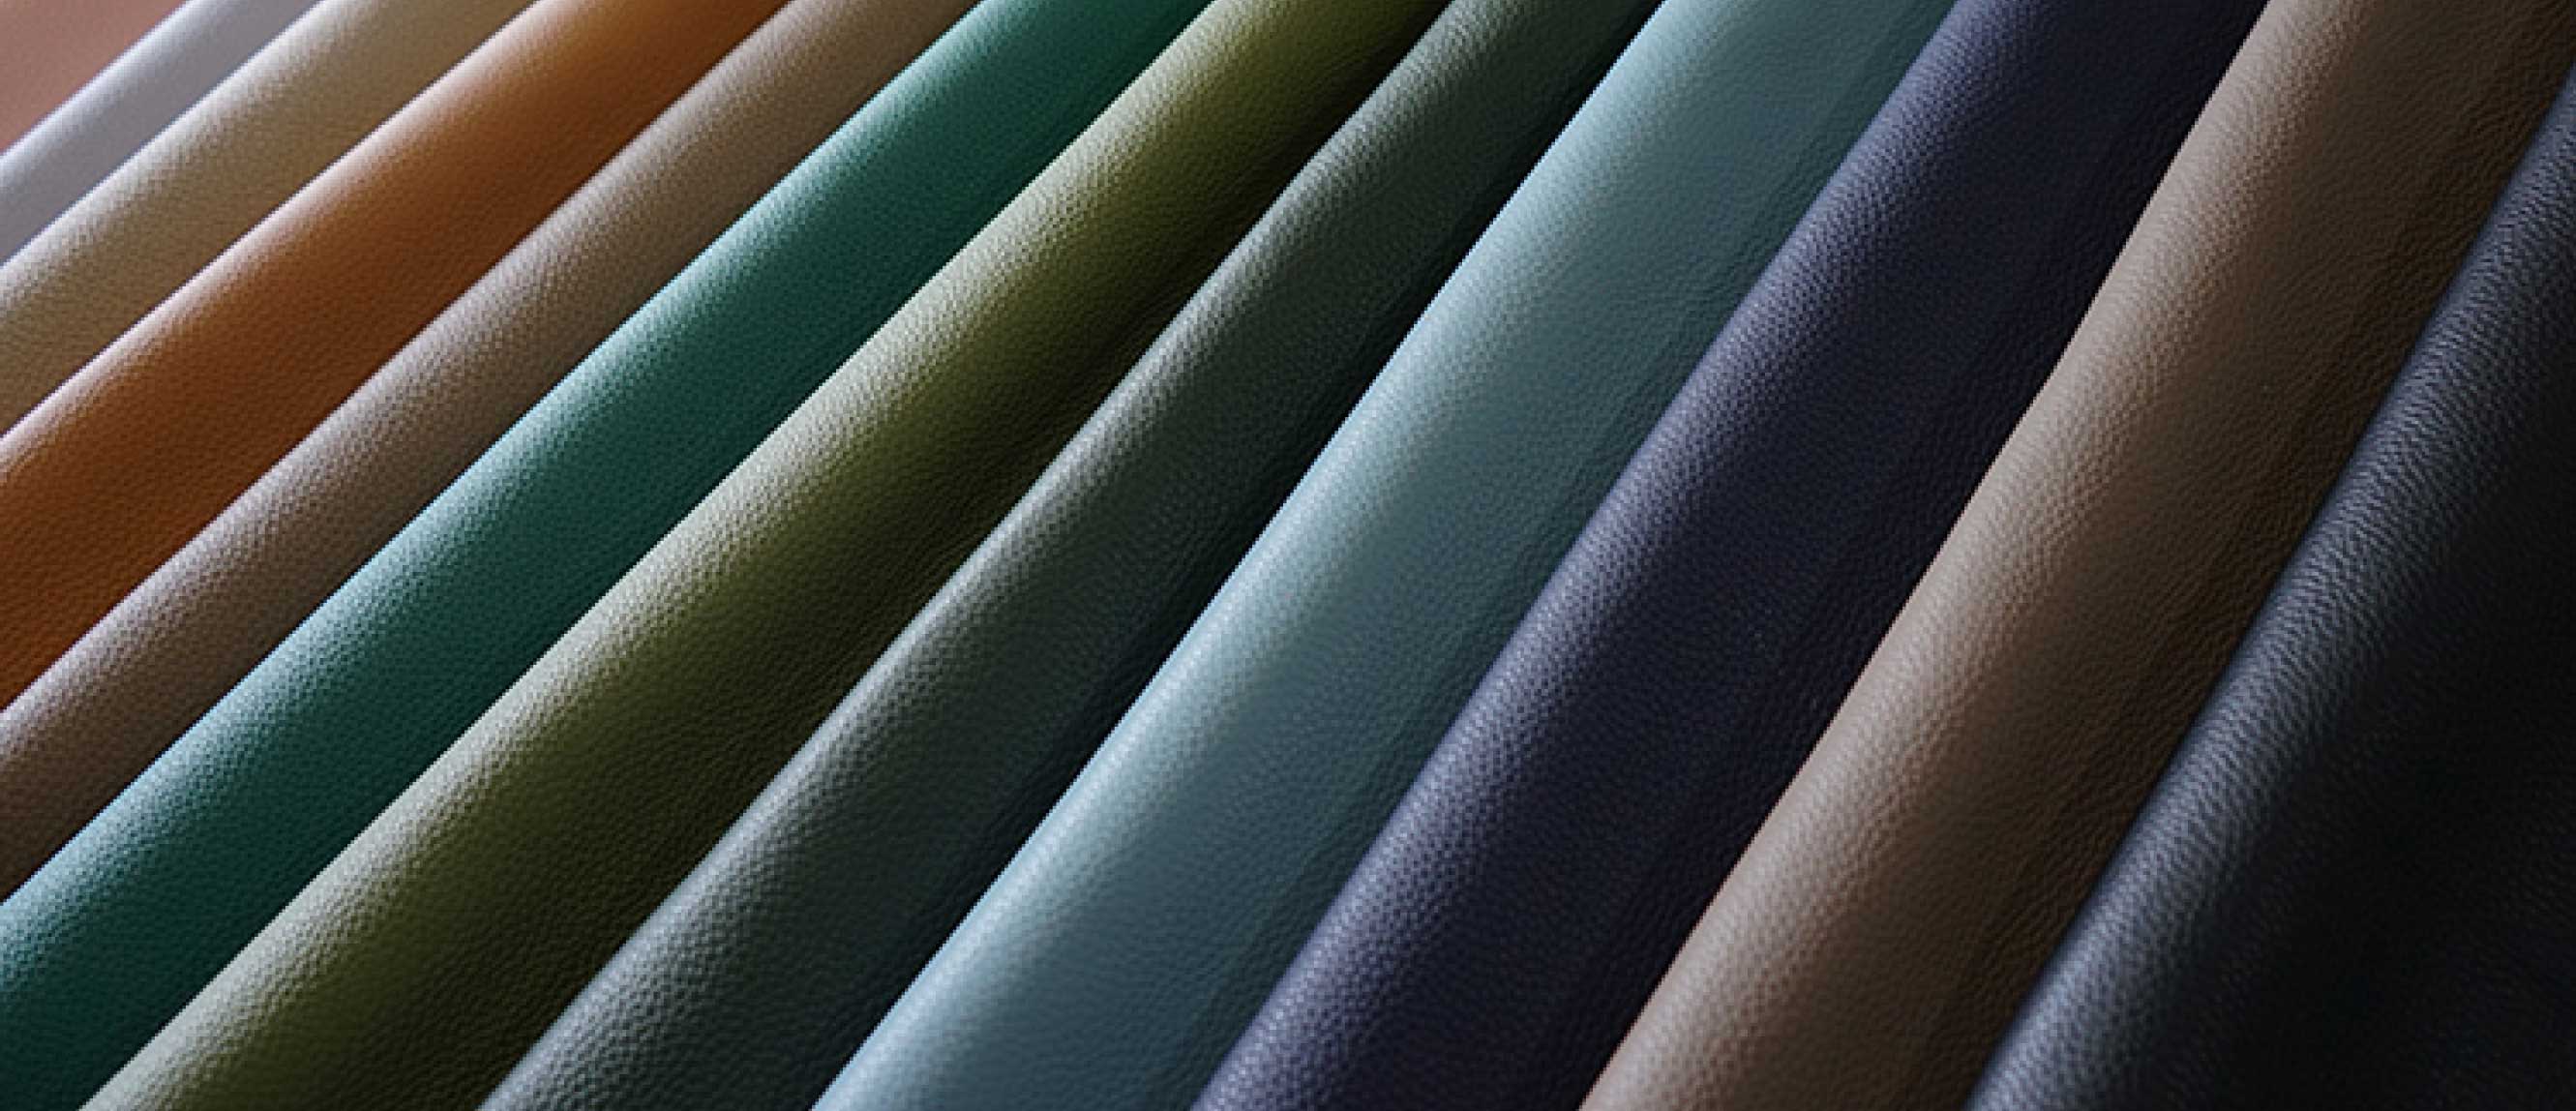 Togo Leather – Made on Jupiter